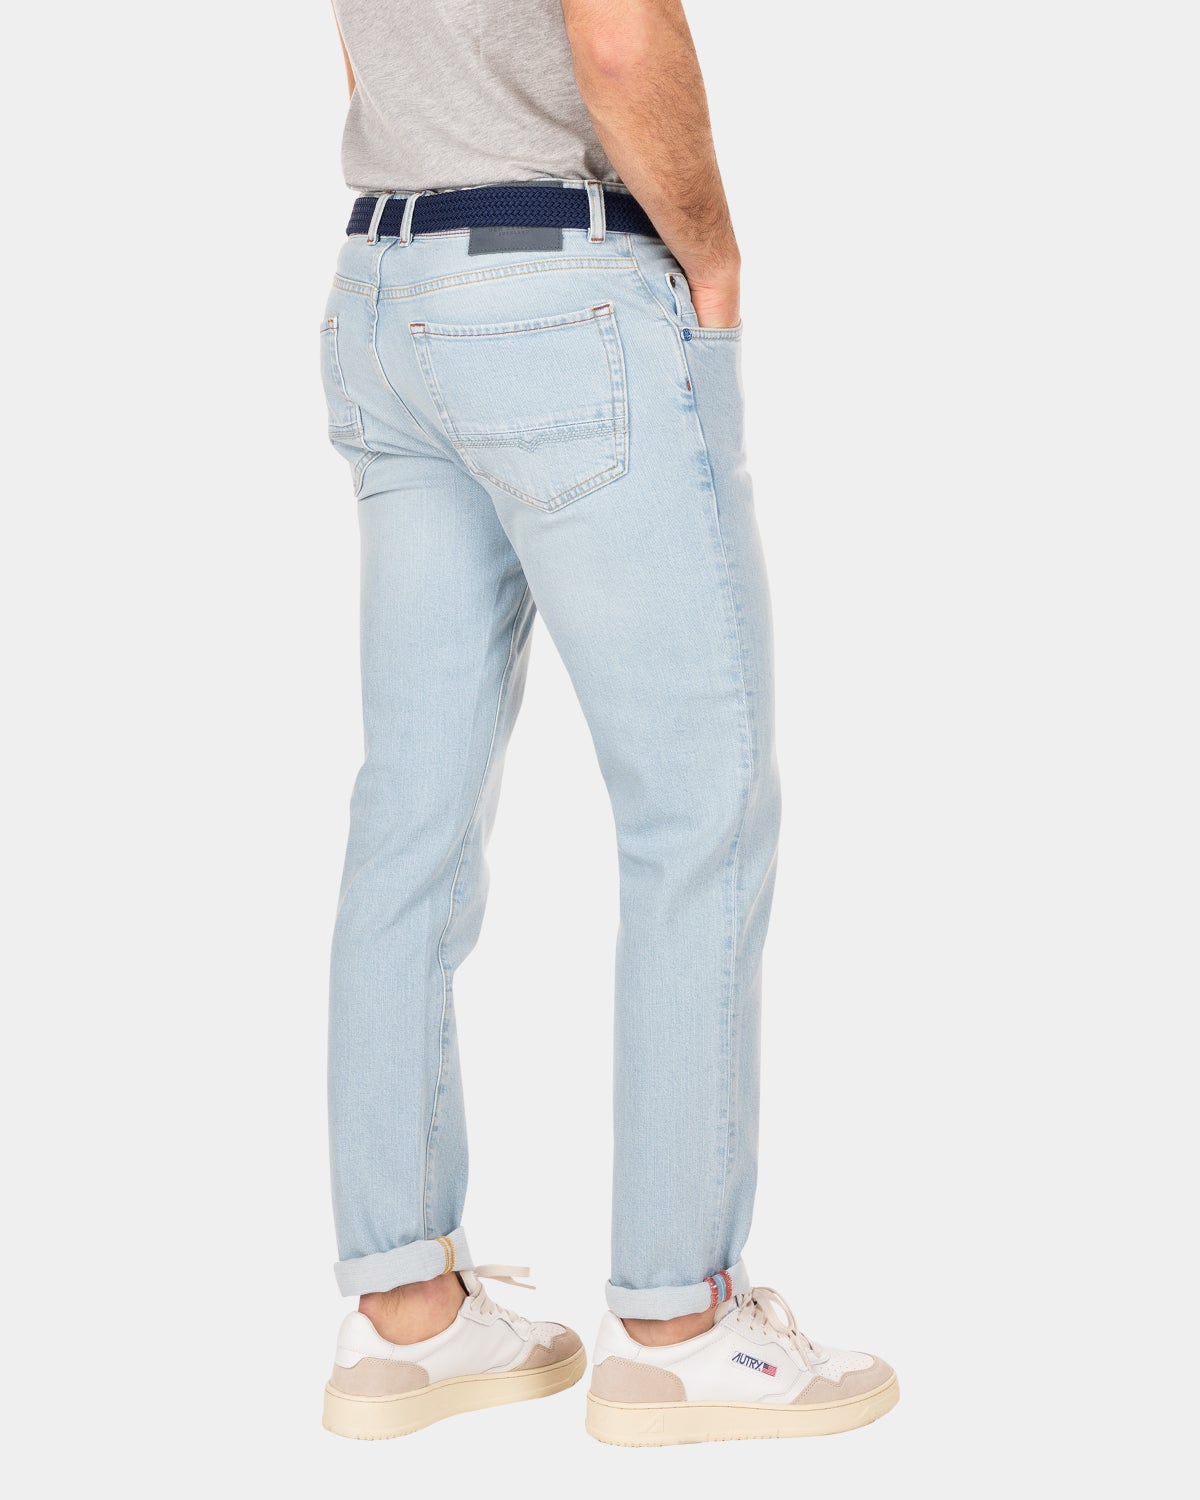 Hellblaue Jeans mit Stretch - Bleach Denim